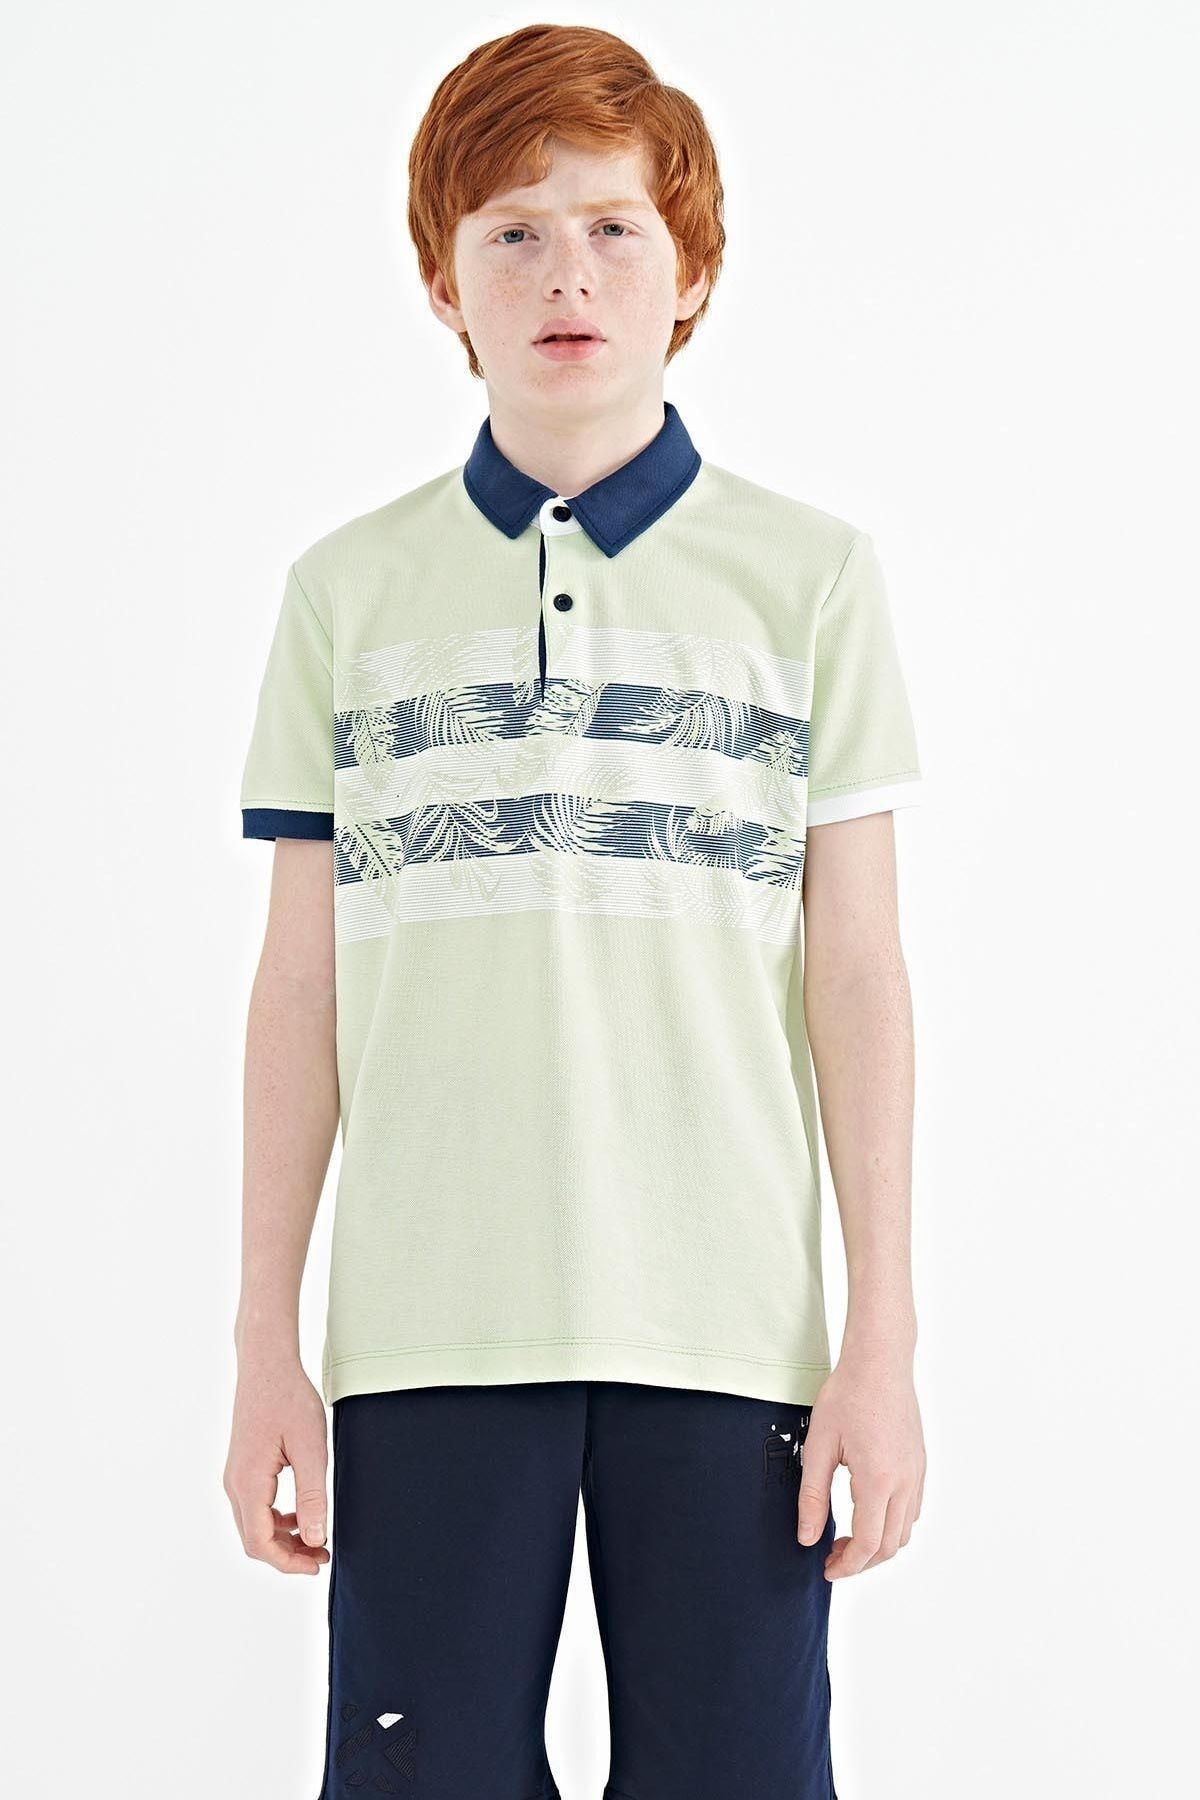 TOMMY LIFE Açık Yeşil Baskı Detaylı Standart Kalıp Polo Yaka Erkek Çocuk T-shirt - 11101